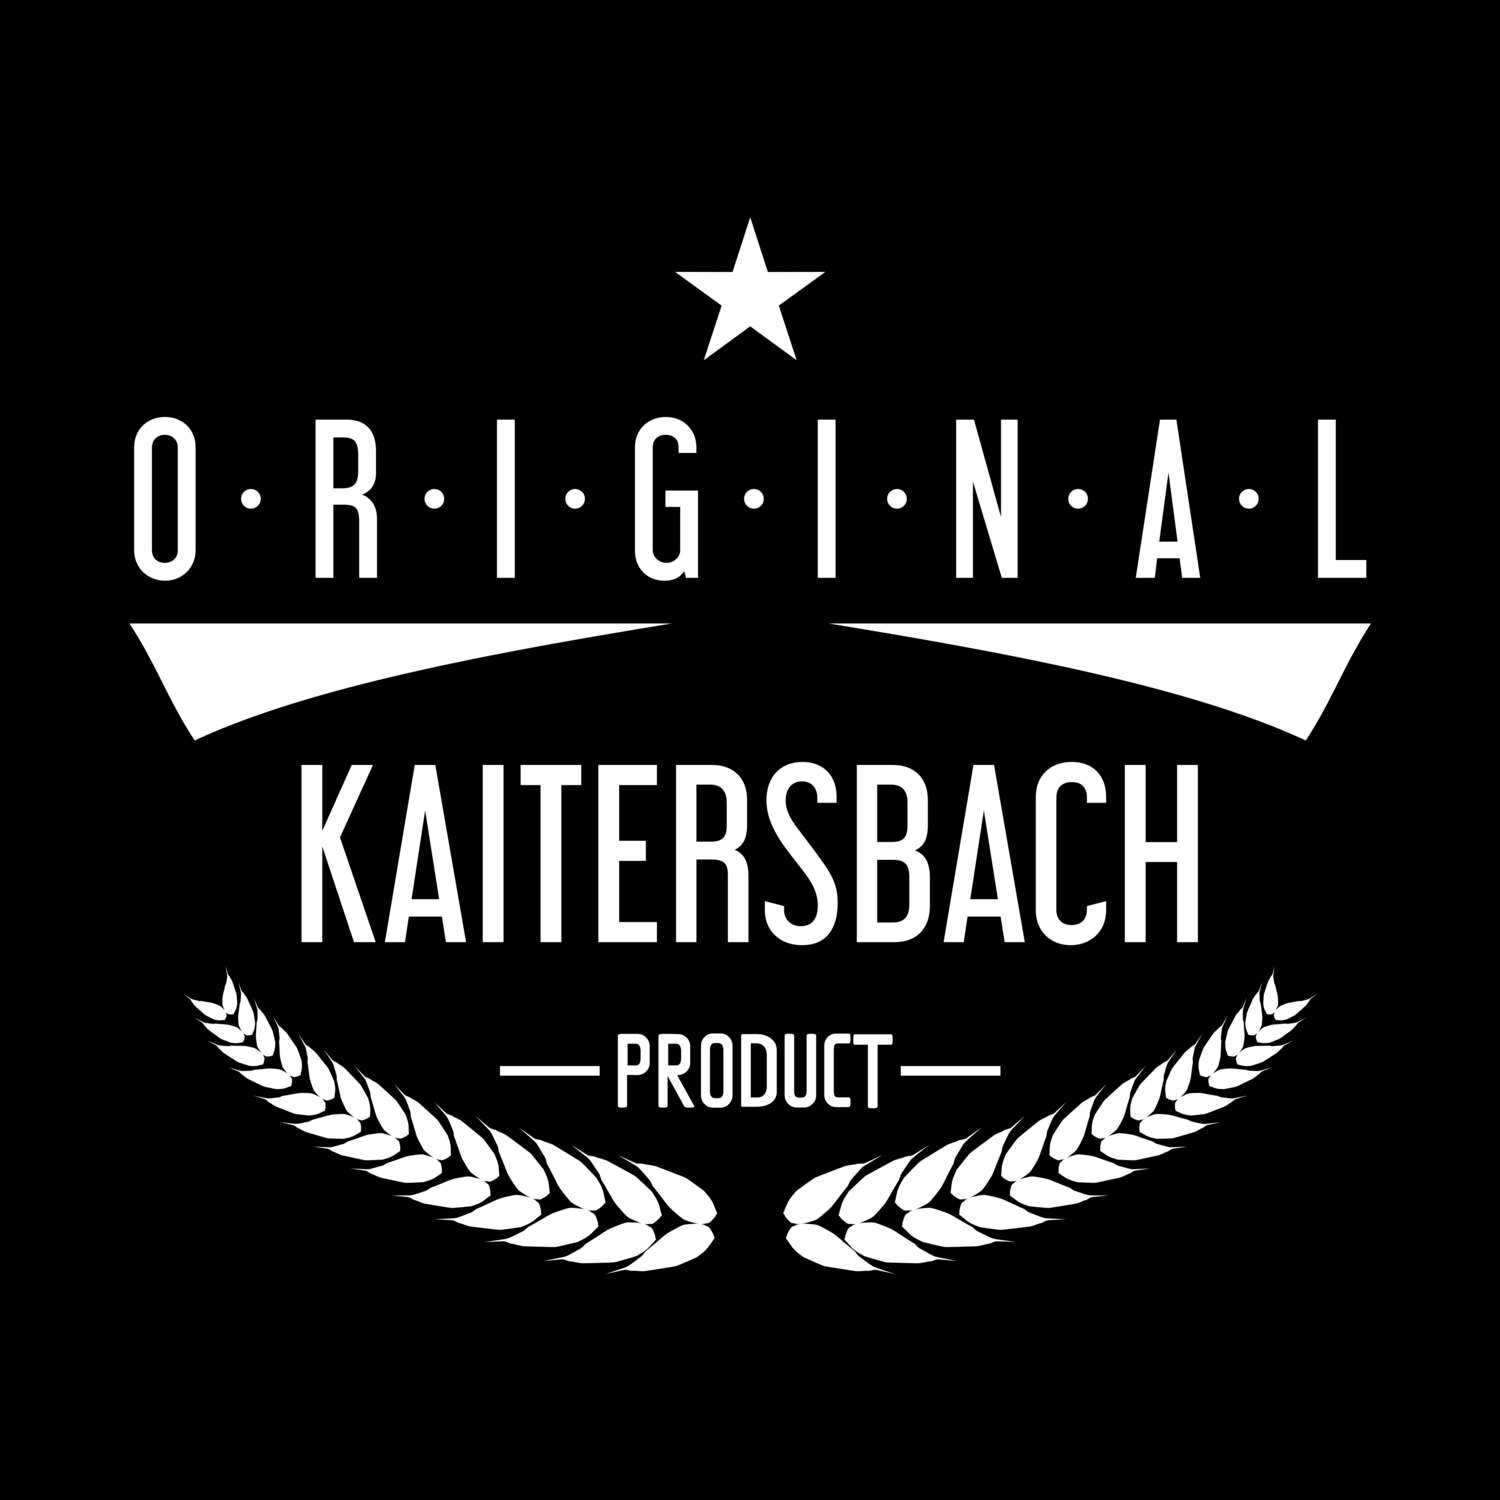 Kaitersbach T-Shirt »Original Product«